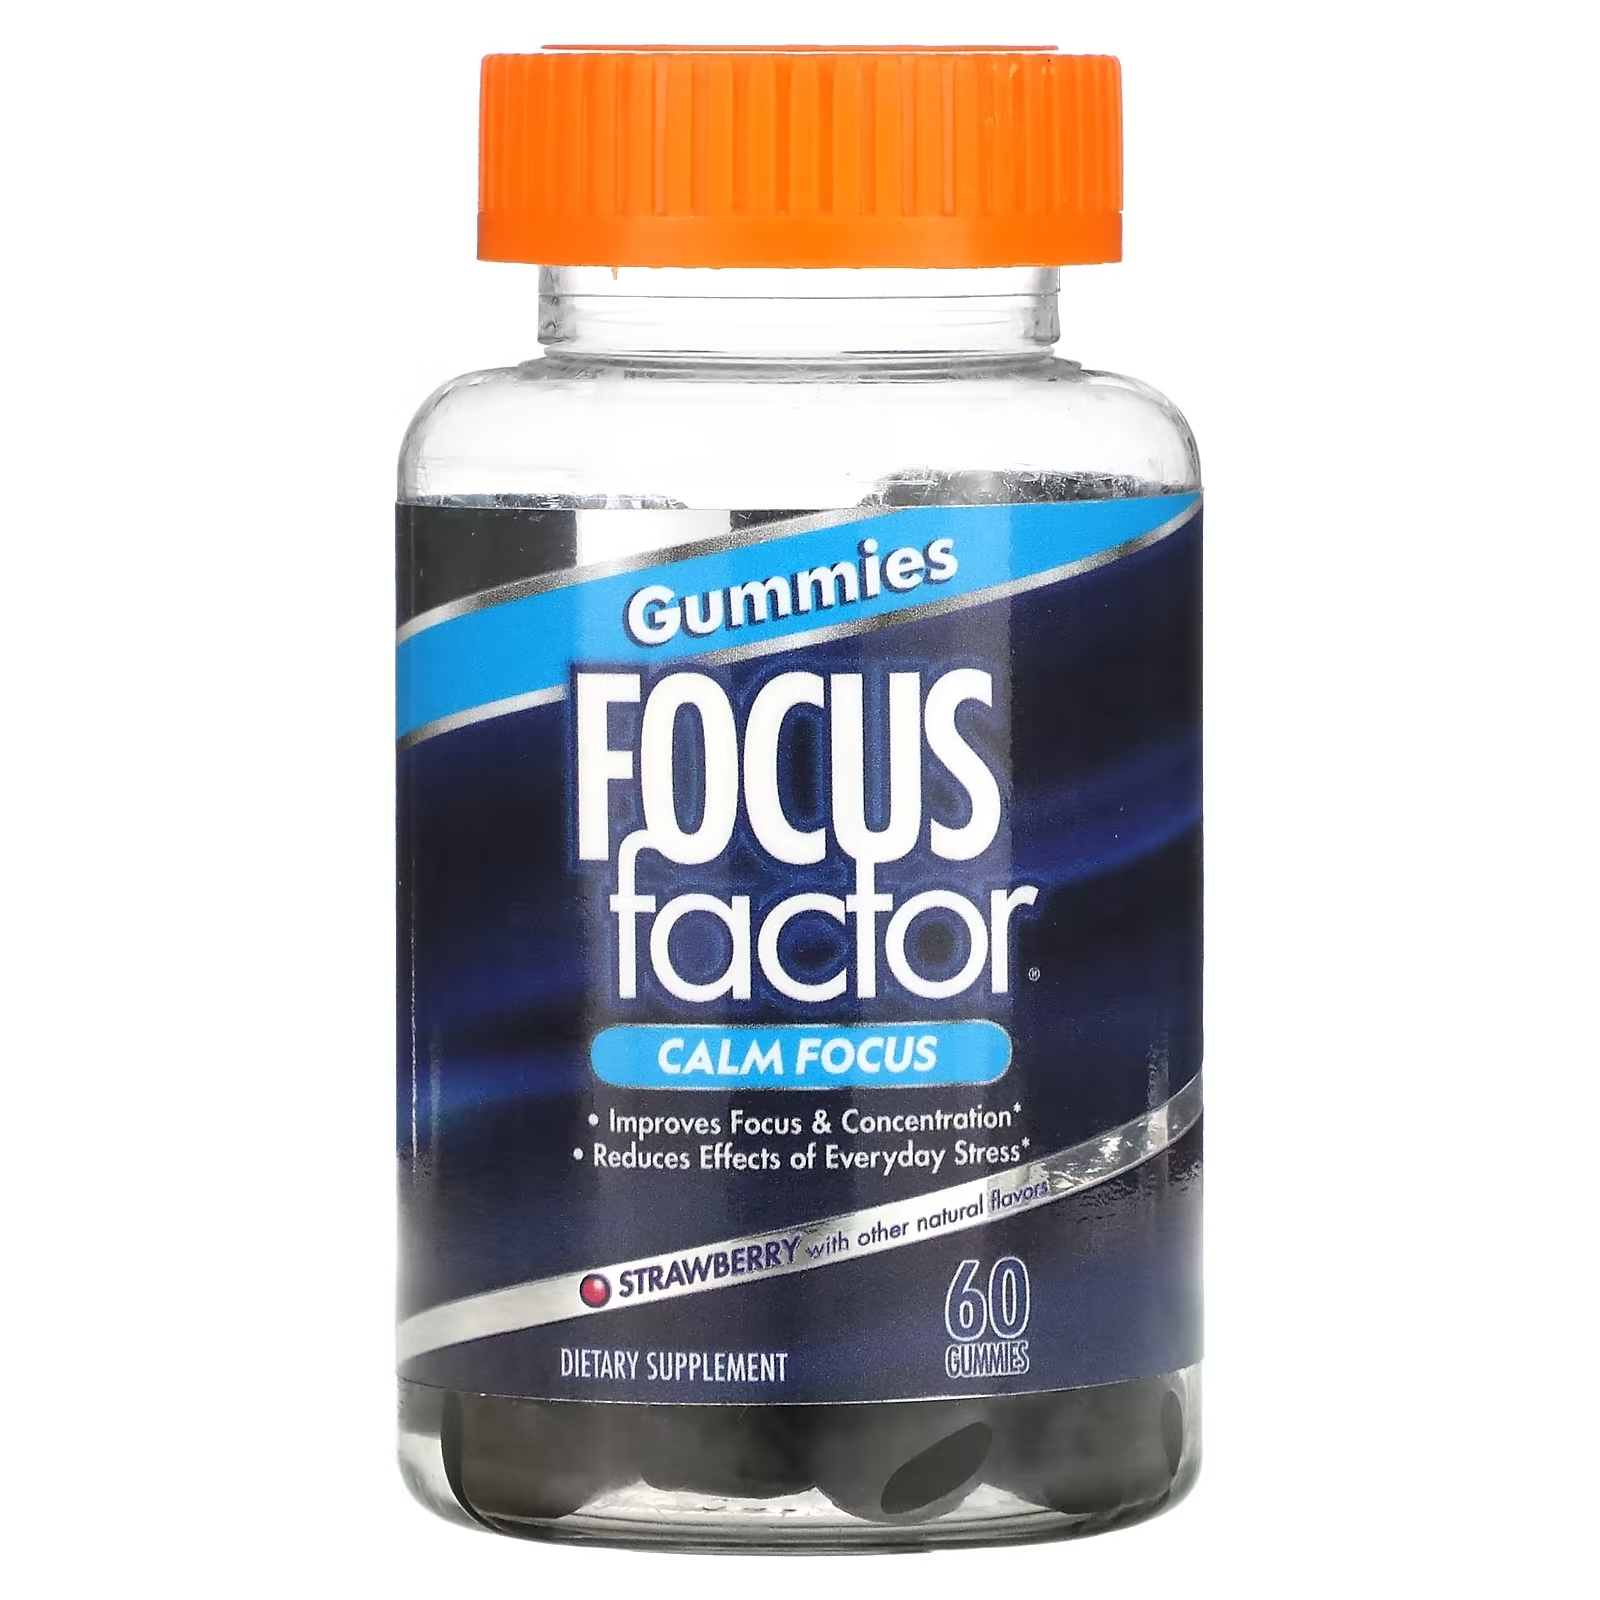 Focus Factor Calm Focus клубника, 60 жевательных таблеток